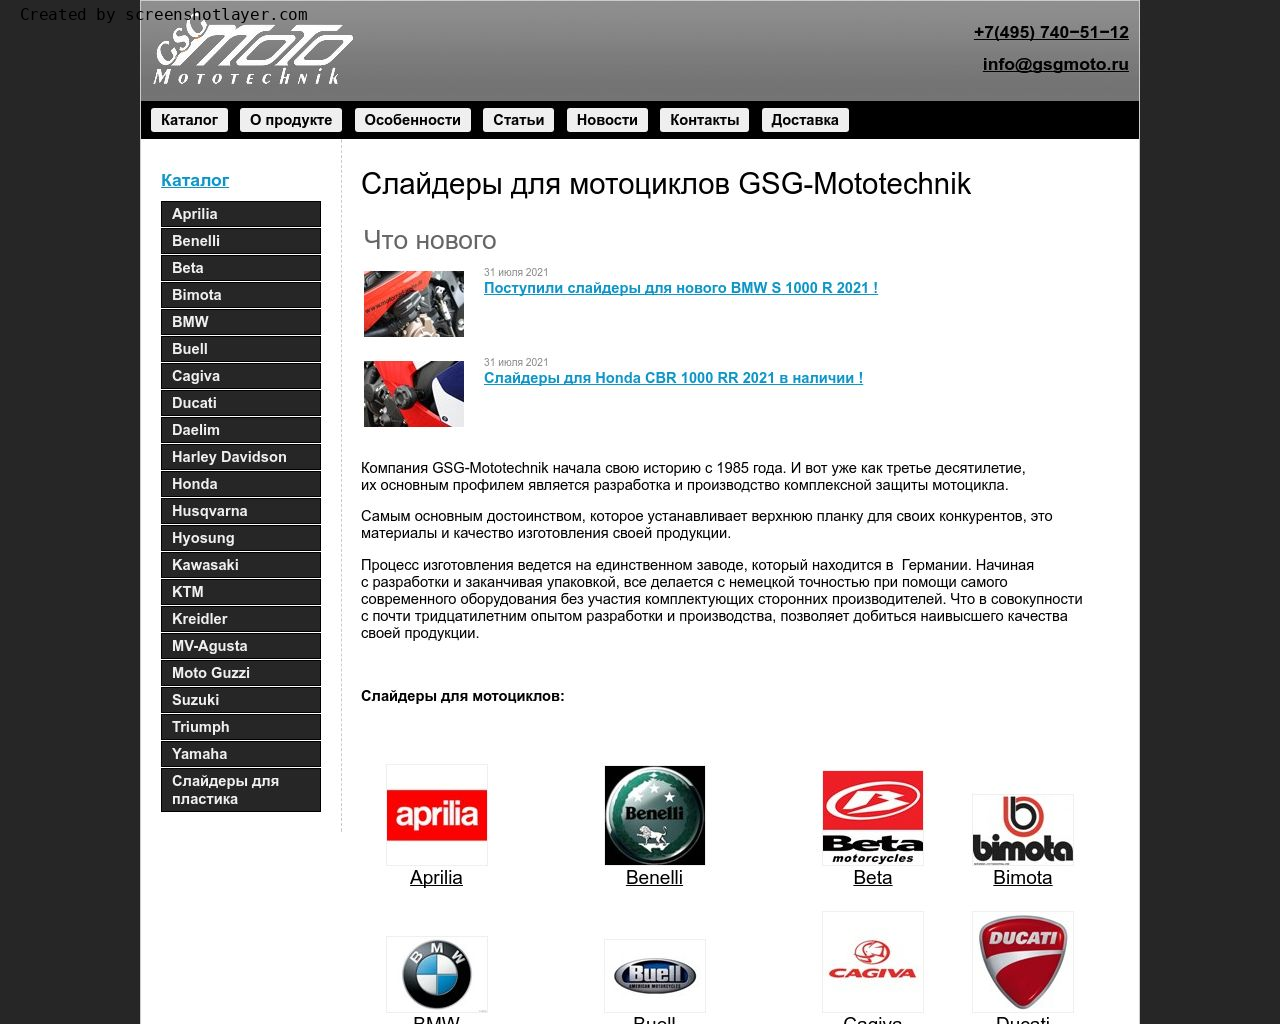 Изображение сайта gsgmoto.ru в разрешении 1280x1024